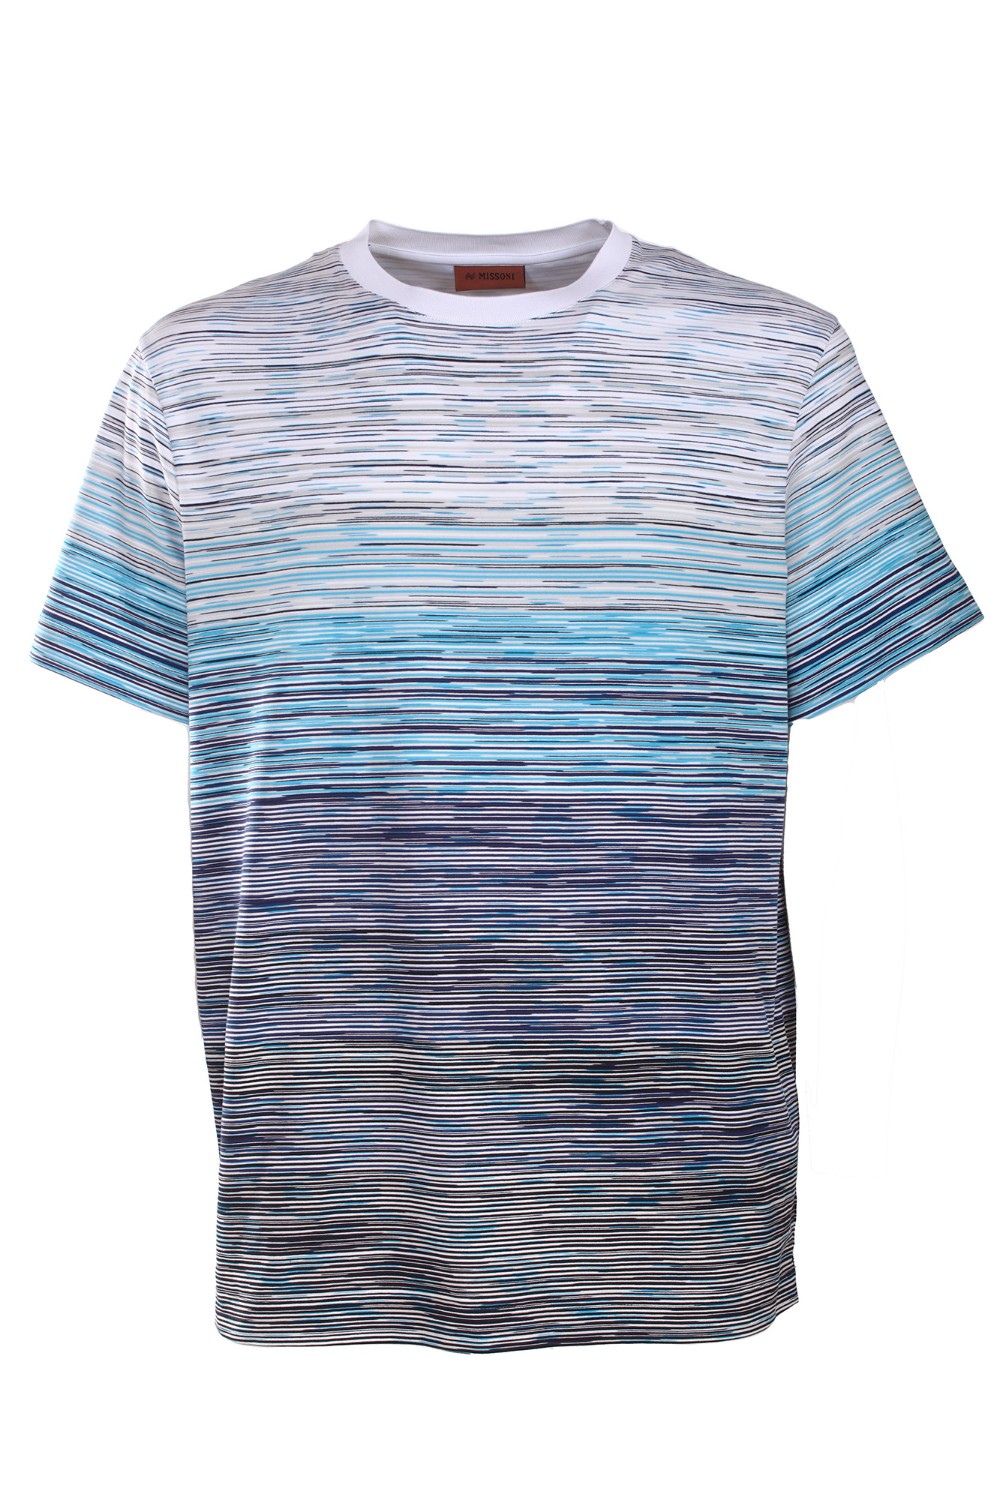 shop MISSONI  T-shirt: Missoni t-shirt girocollo con maniche corte multicolore.
Composizione: 100% Cotone.
Fabbricato in Romania.. US23SL0J-F705K number 2404253